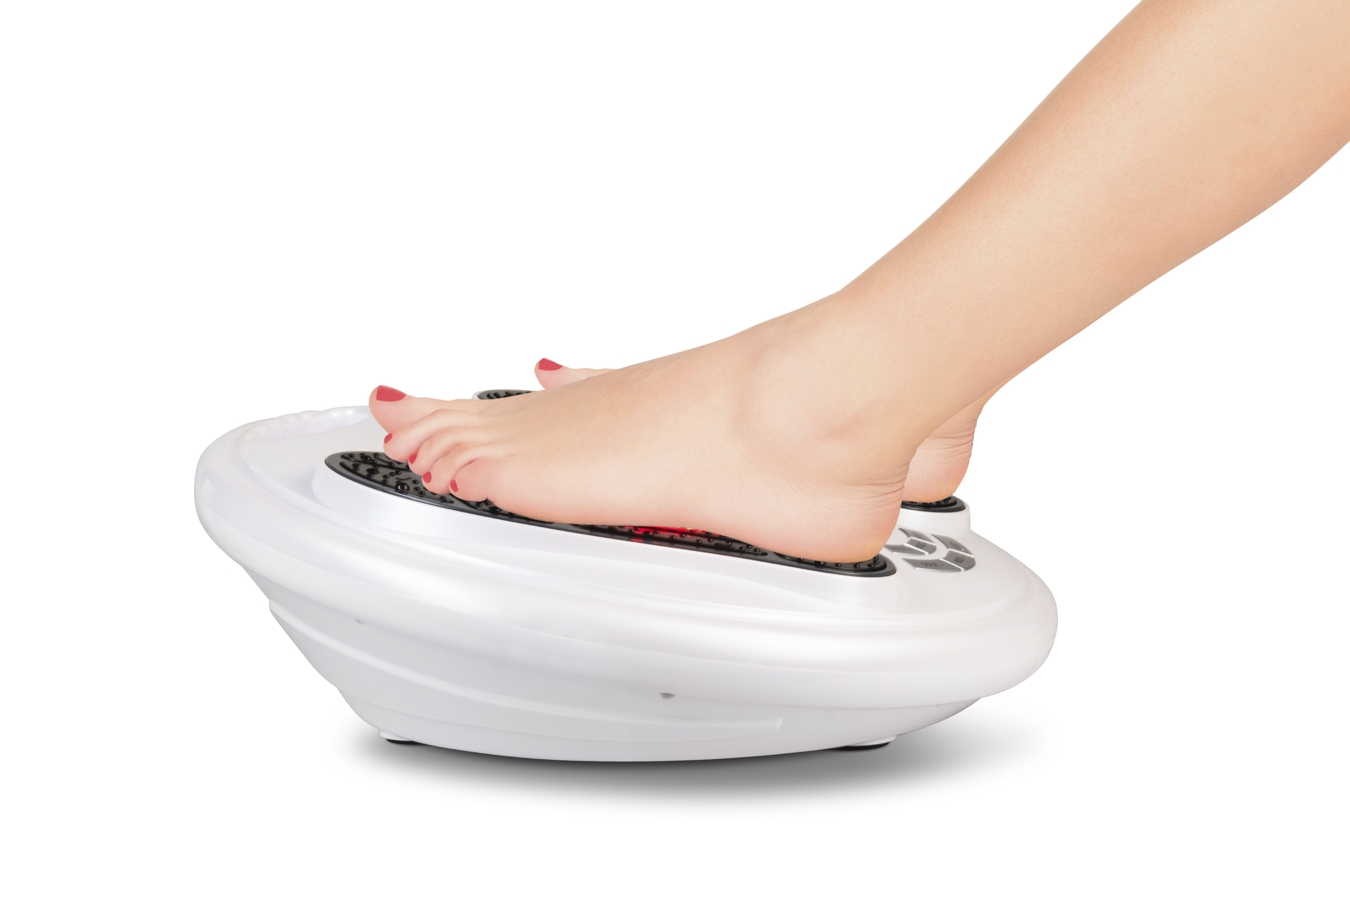 Professionele elektrische spierstimulator met voet massage